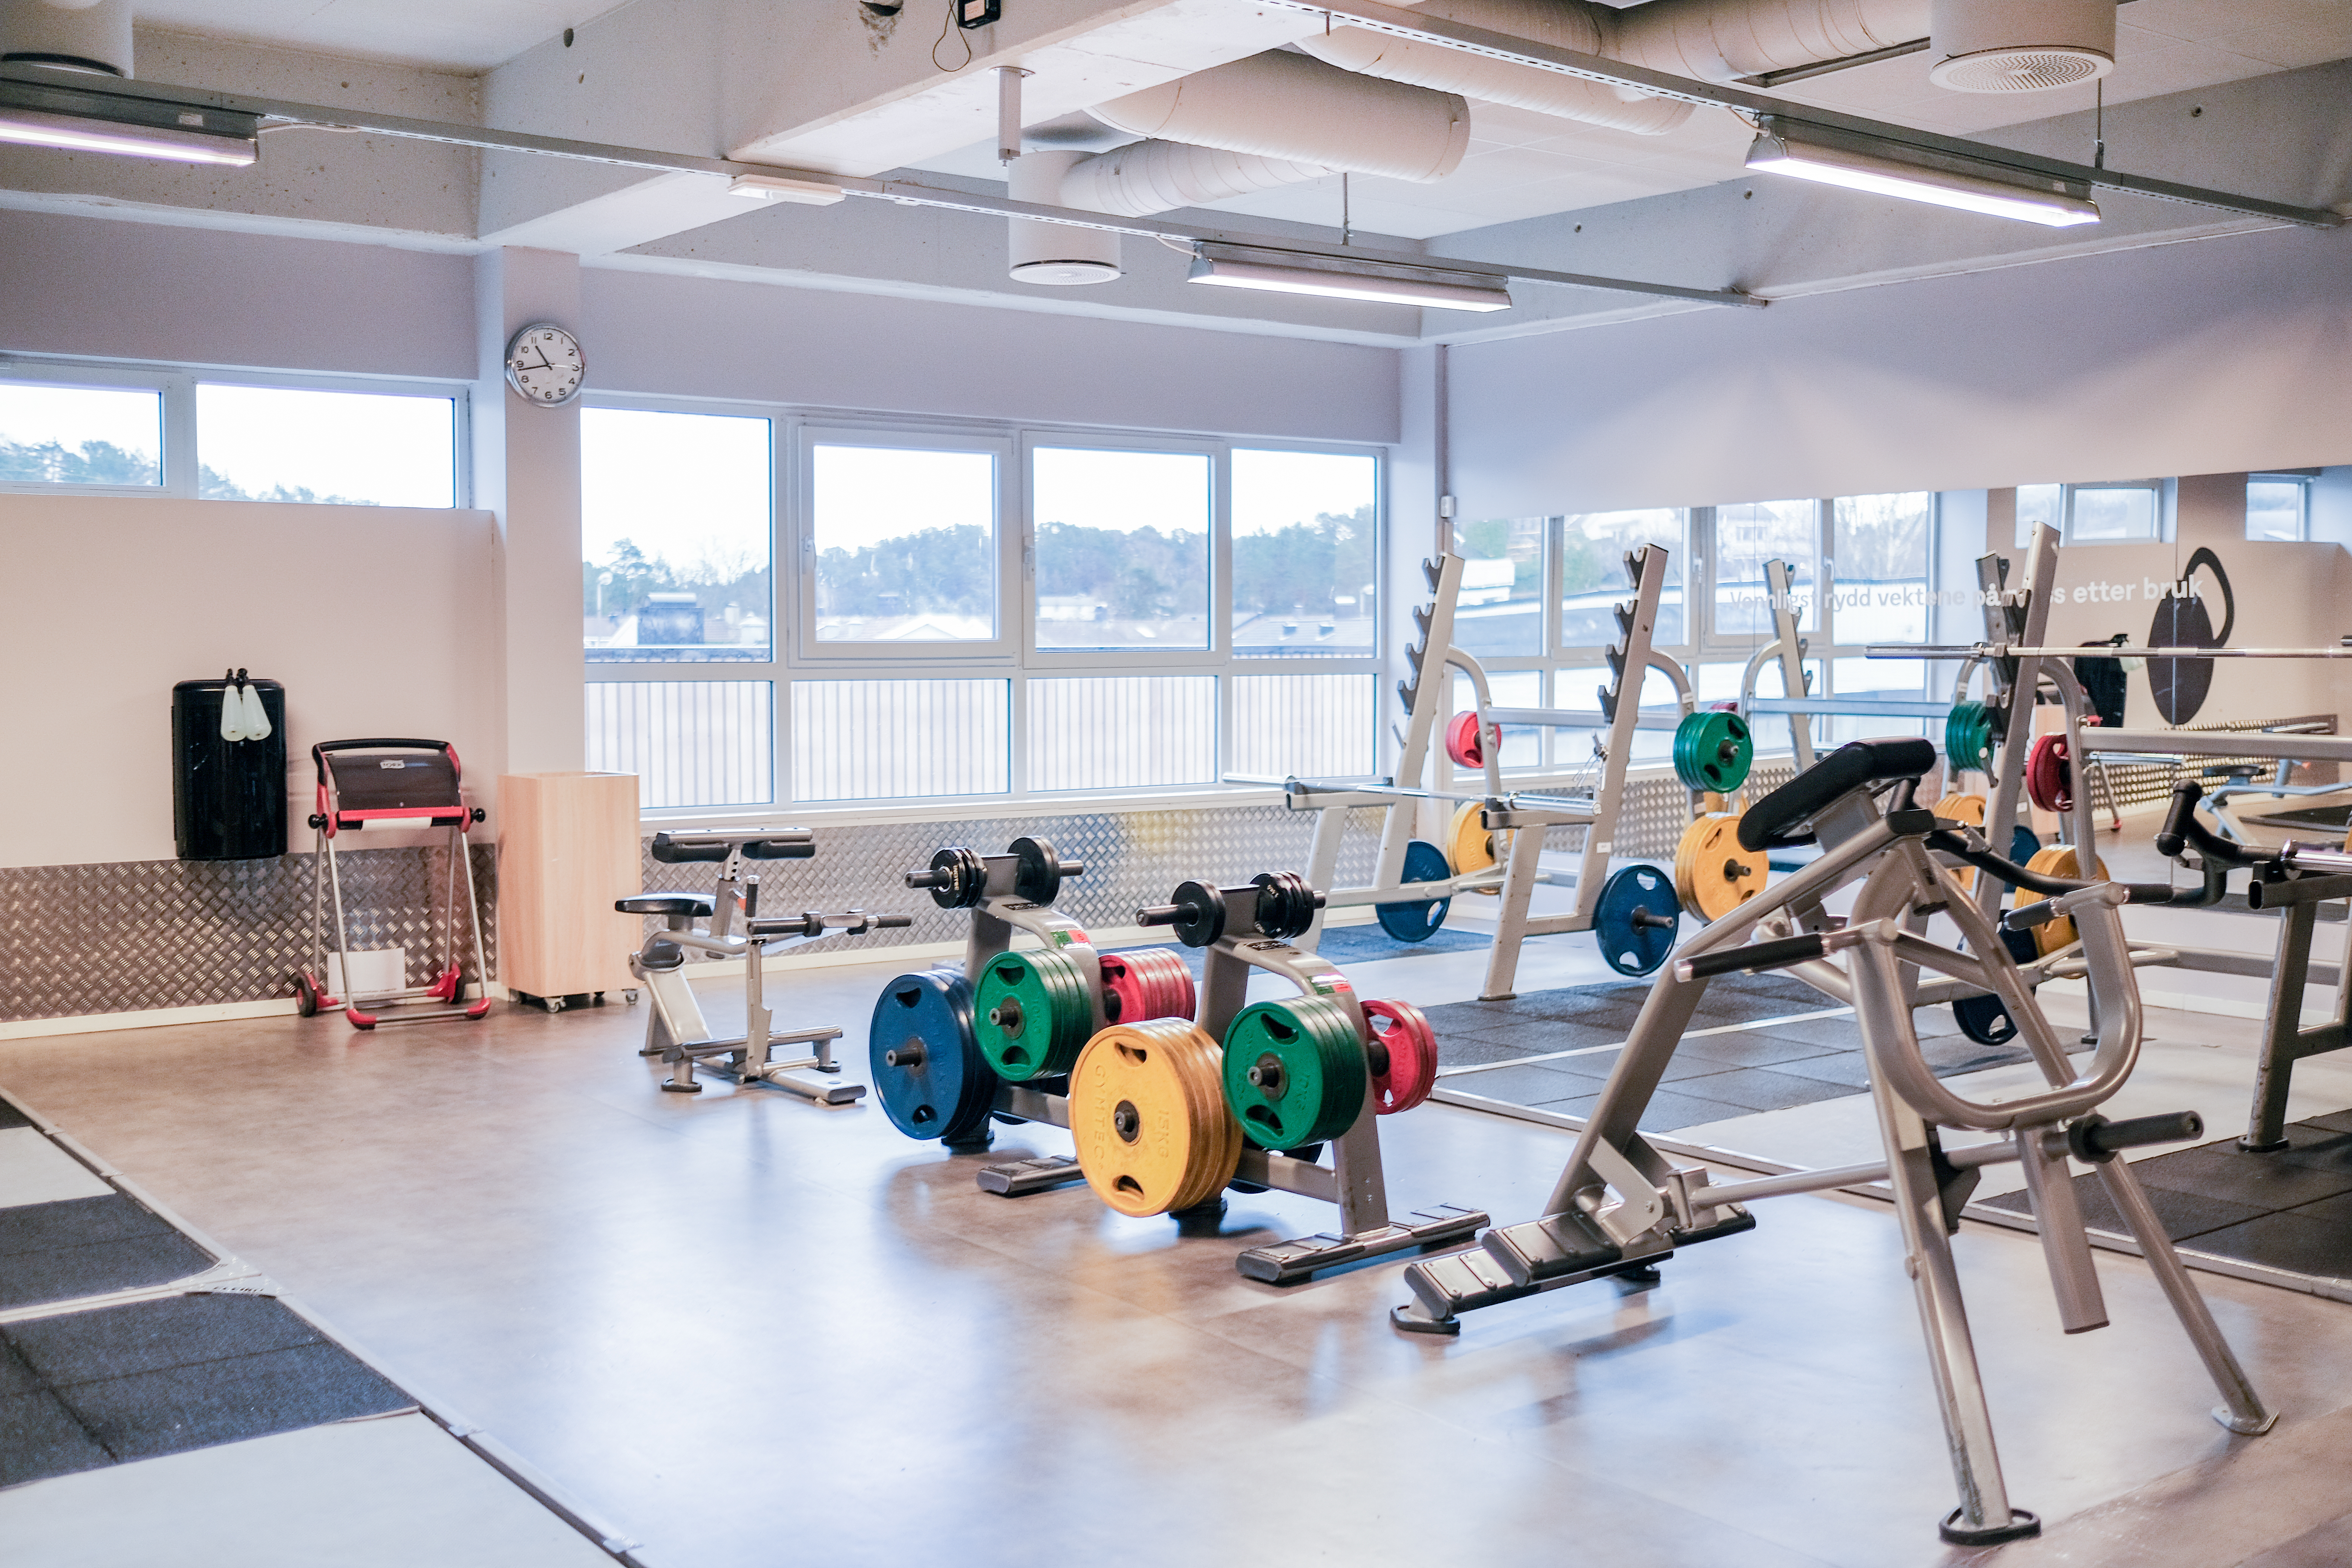 På Fresh Fitness-treningssenteret i Lund tilbyr vi et bredt utvalg av styrketreningsutstyr, inkludert både frivekter og styrkeapparater. Vårt utstyr er designet for å dekke alle behov og preferanser når det gjelder styrketrening, og våre erfarne treningsveiledere vil være tilgjengelige for å hjelpe deg med å finne riktig utstyr og oppsett for dine treningsmål.